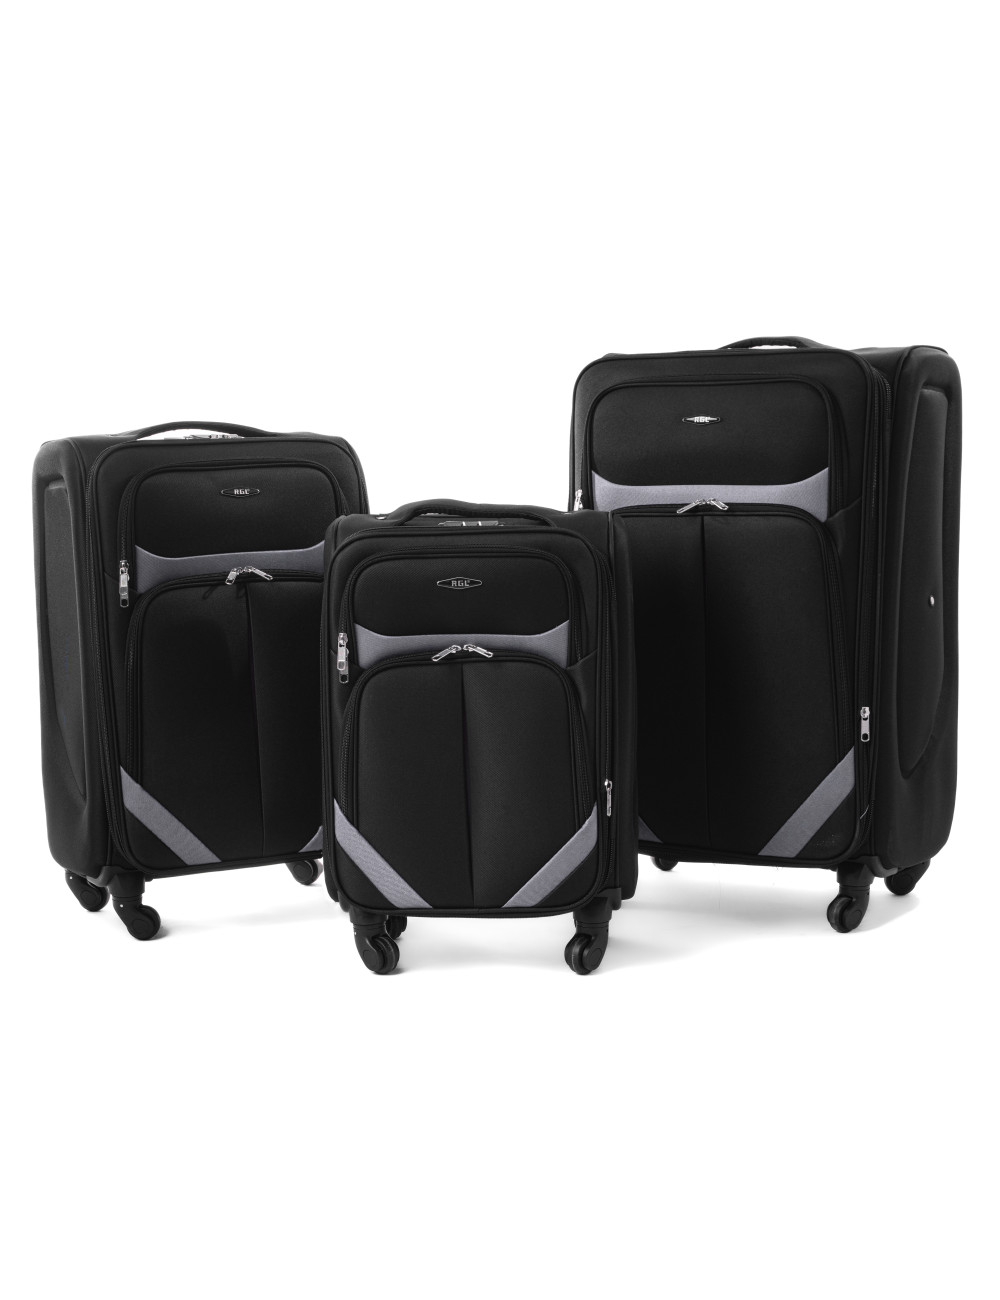 Zestaw walizek podróżnych na kółkach 3w1 S-010  XXL XL L - czarno-grafitowy